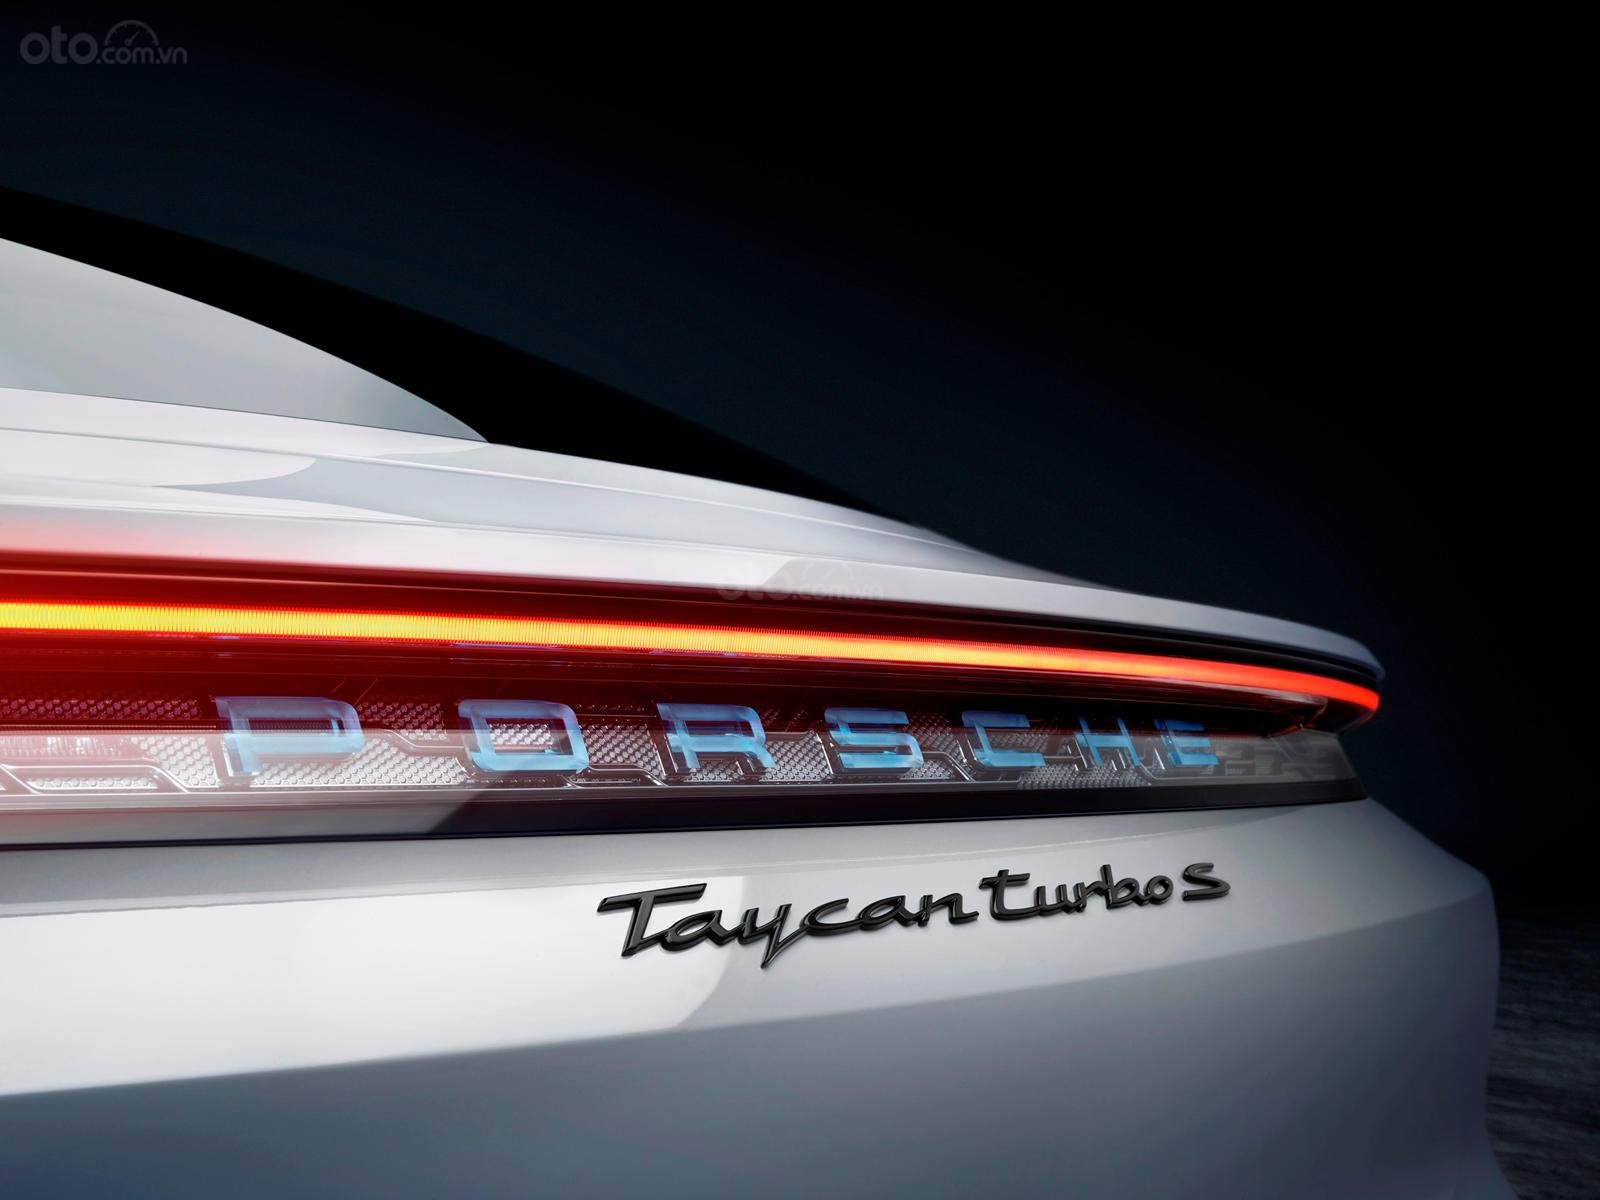 Dải đèn LED kéo dài trở thành điểm nhấn tôn thêm vẻ sang trọng cho xe Porsche Taycan.